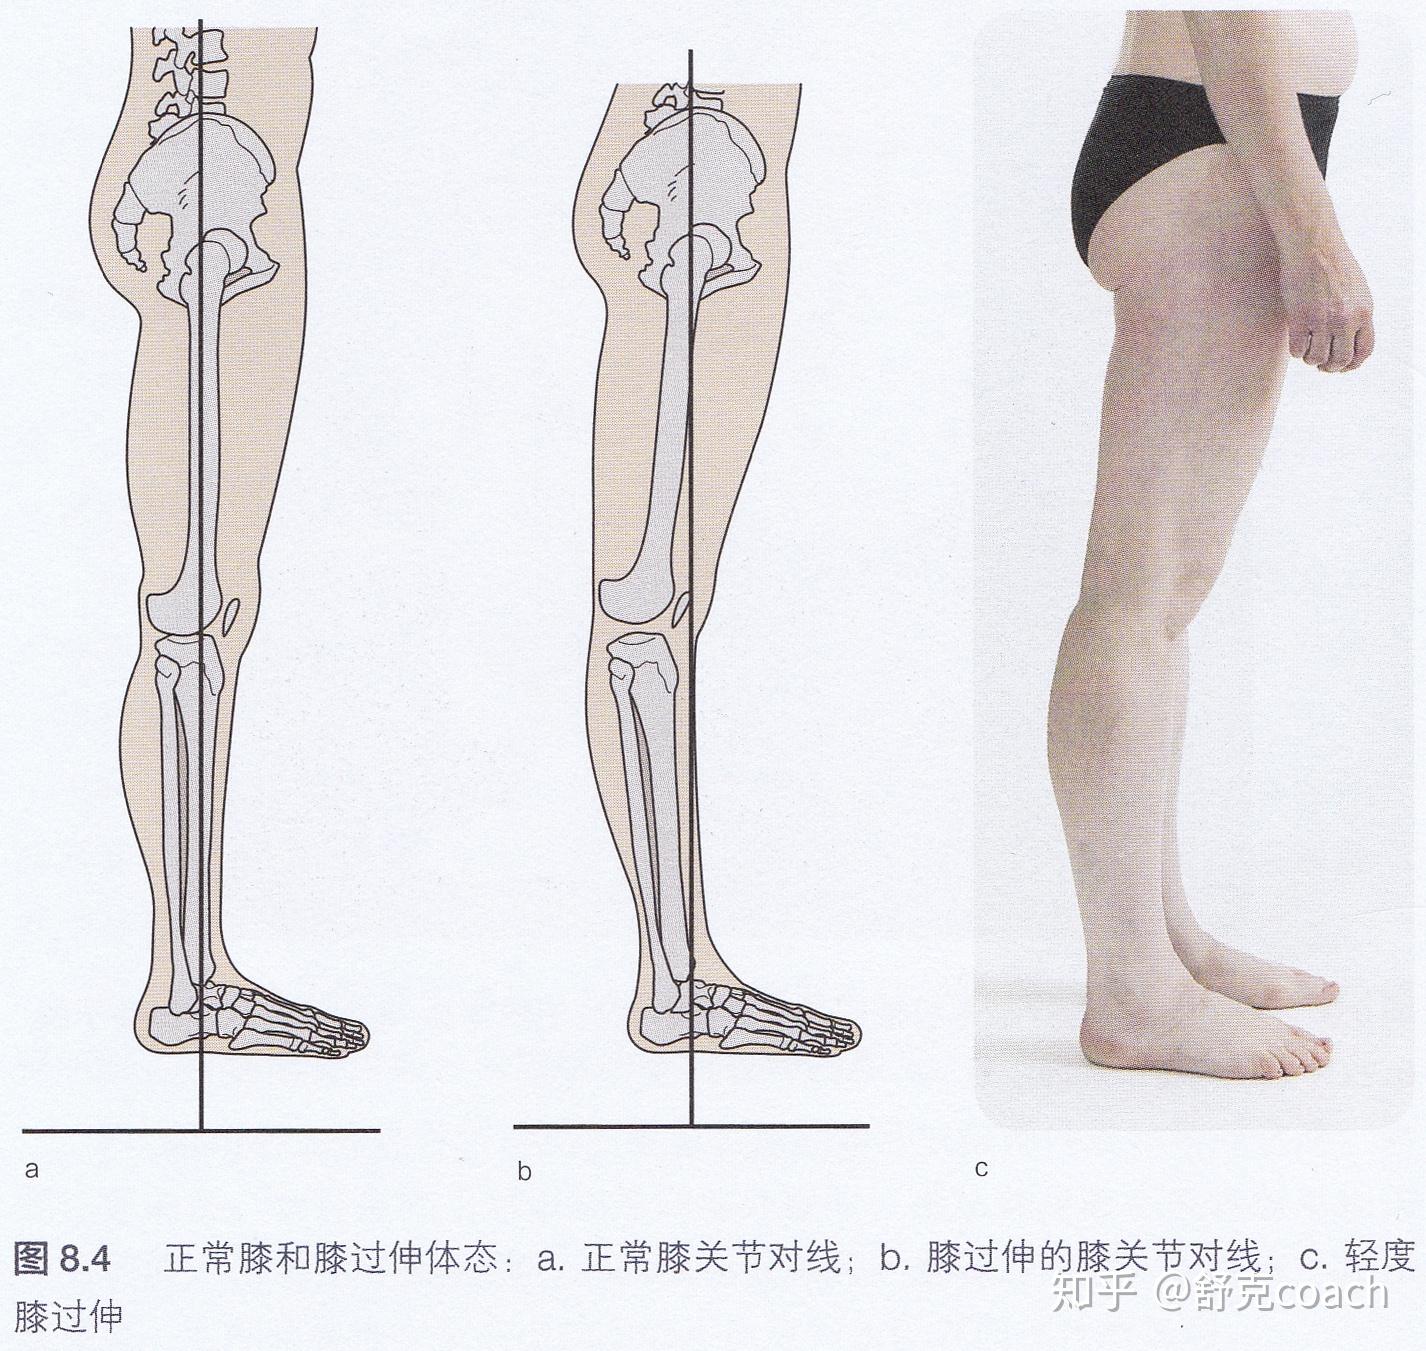 膝关节应用解剖及手术入路，详细解析！ - 好医术早读文章 - 好医术-赋能医生守护生命